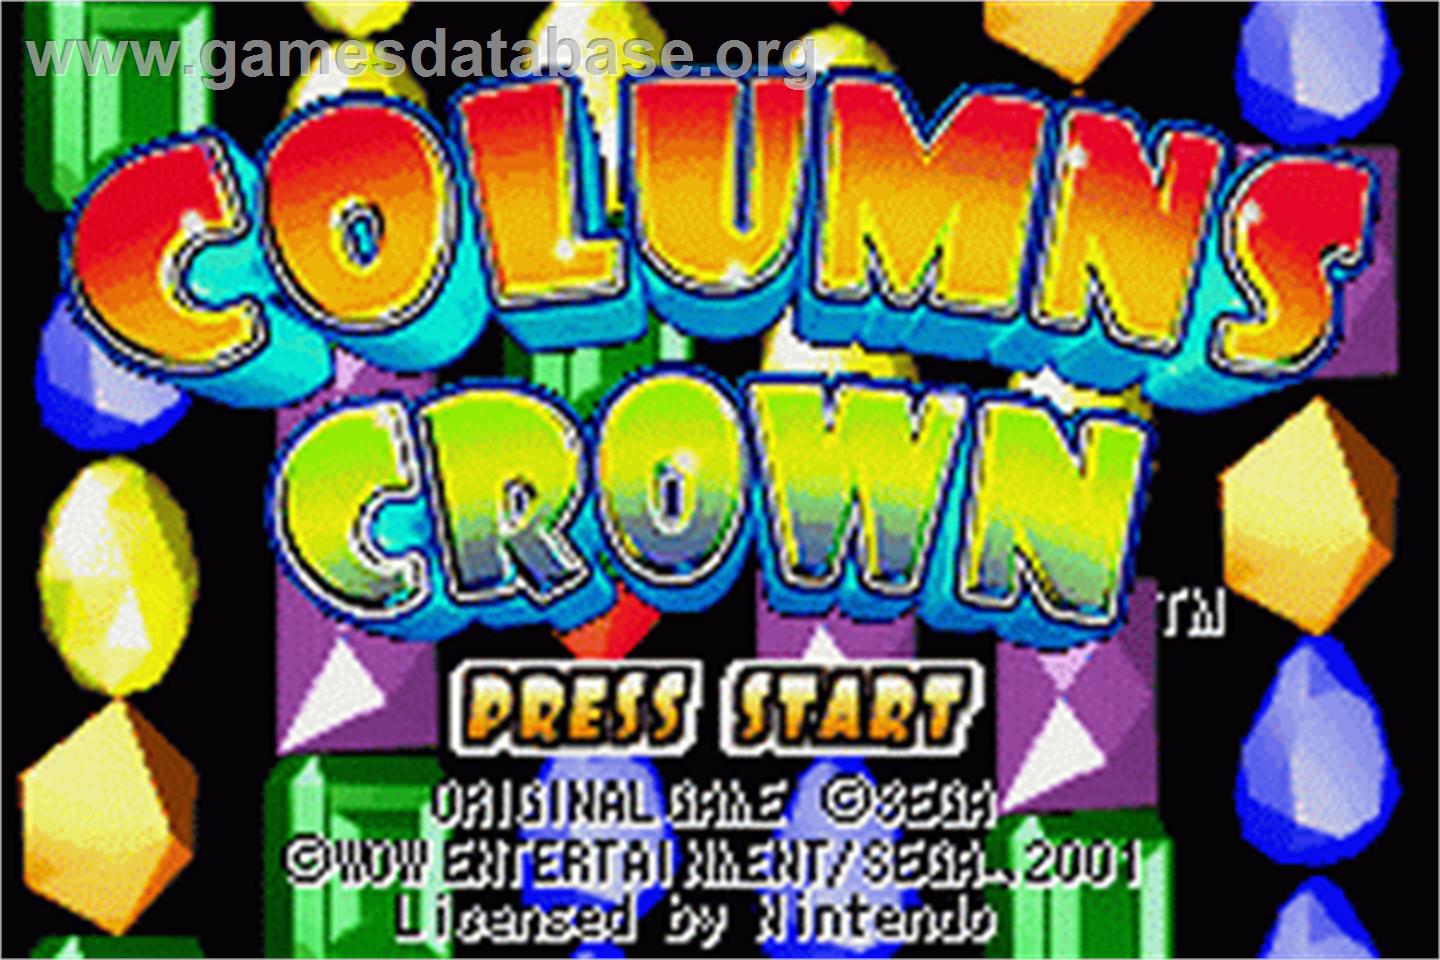 Columns Crown - Nintendo Game Boy Advance - Artwork - Title Screen